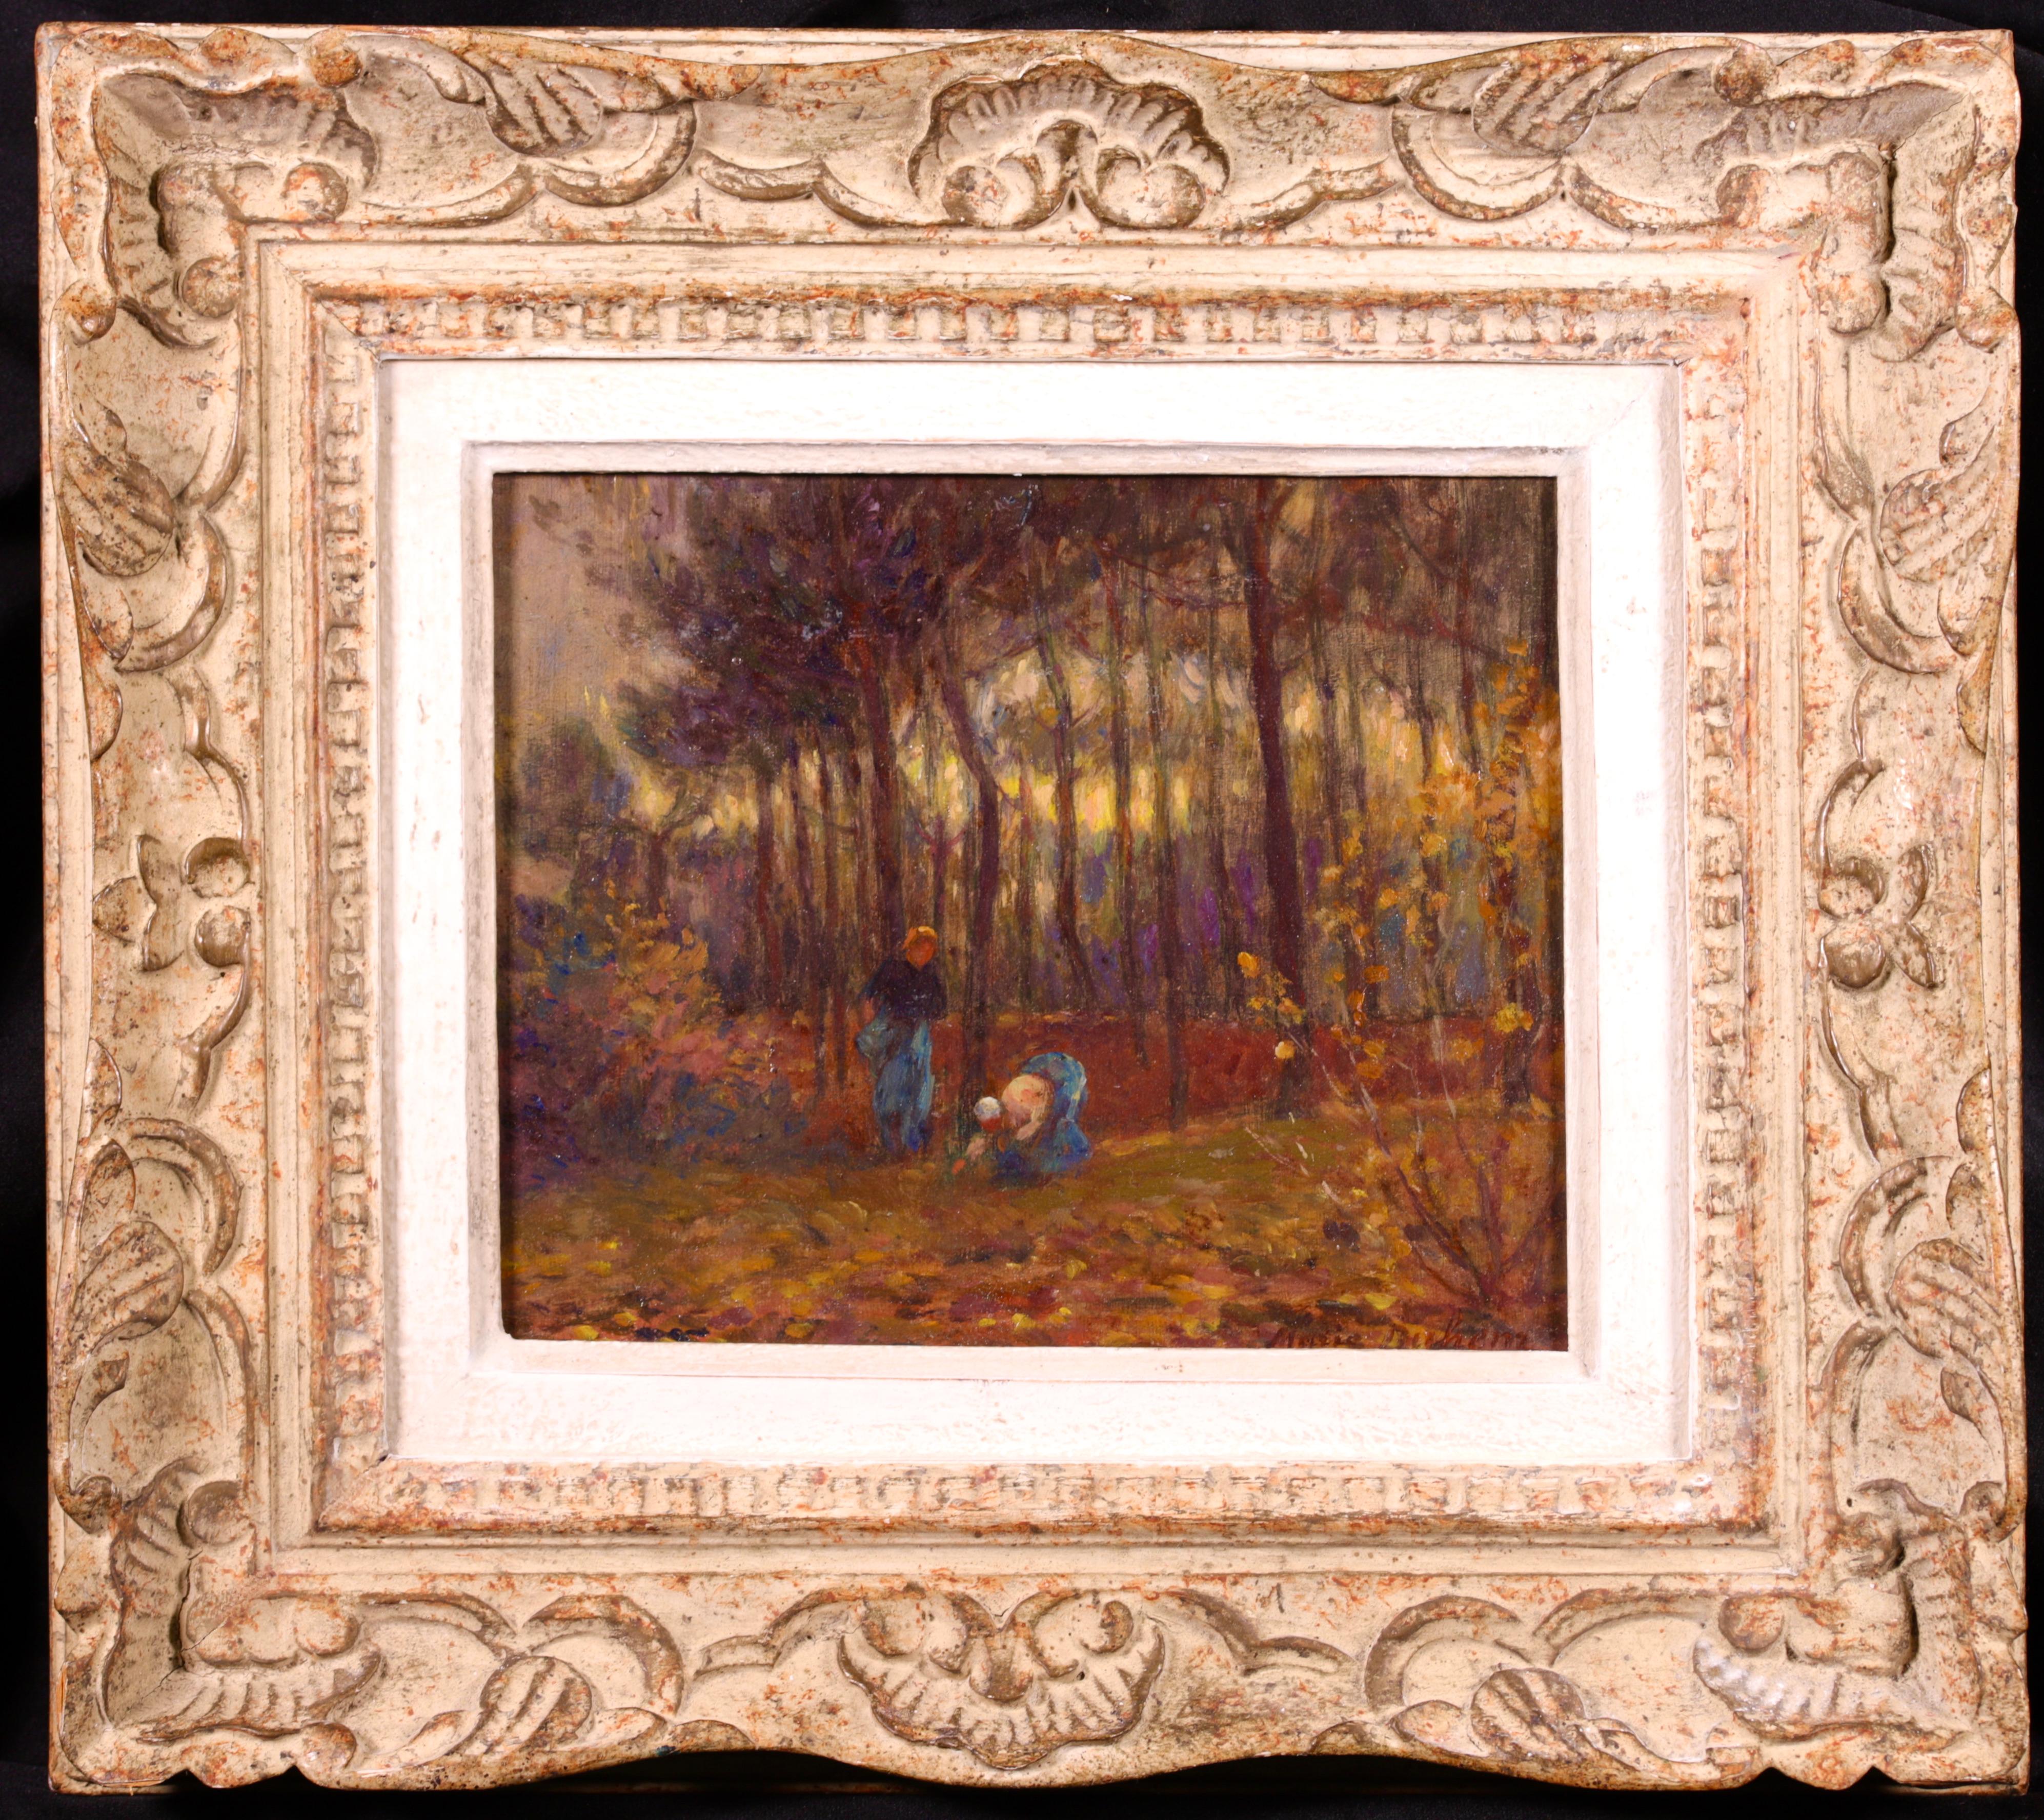 Huile sur panneau signée vers 1910 par la peintre impressionniste française Marie Duhem. L'œuvre représente deux femmes ramassant des légumes à côté d'un bois en automne. Le soleil jaunit en se couchant derrière les arbres. 

Signature :
Signé en